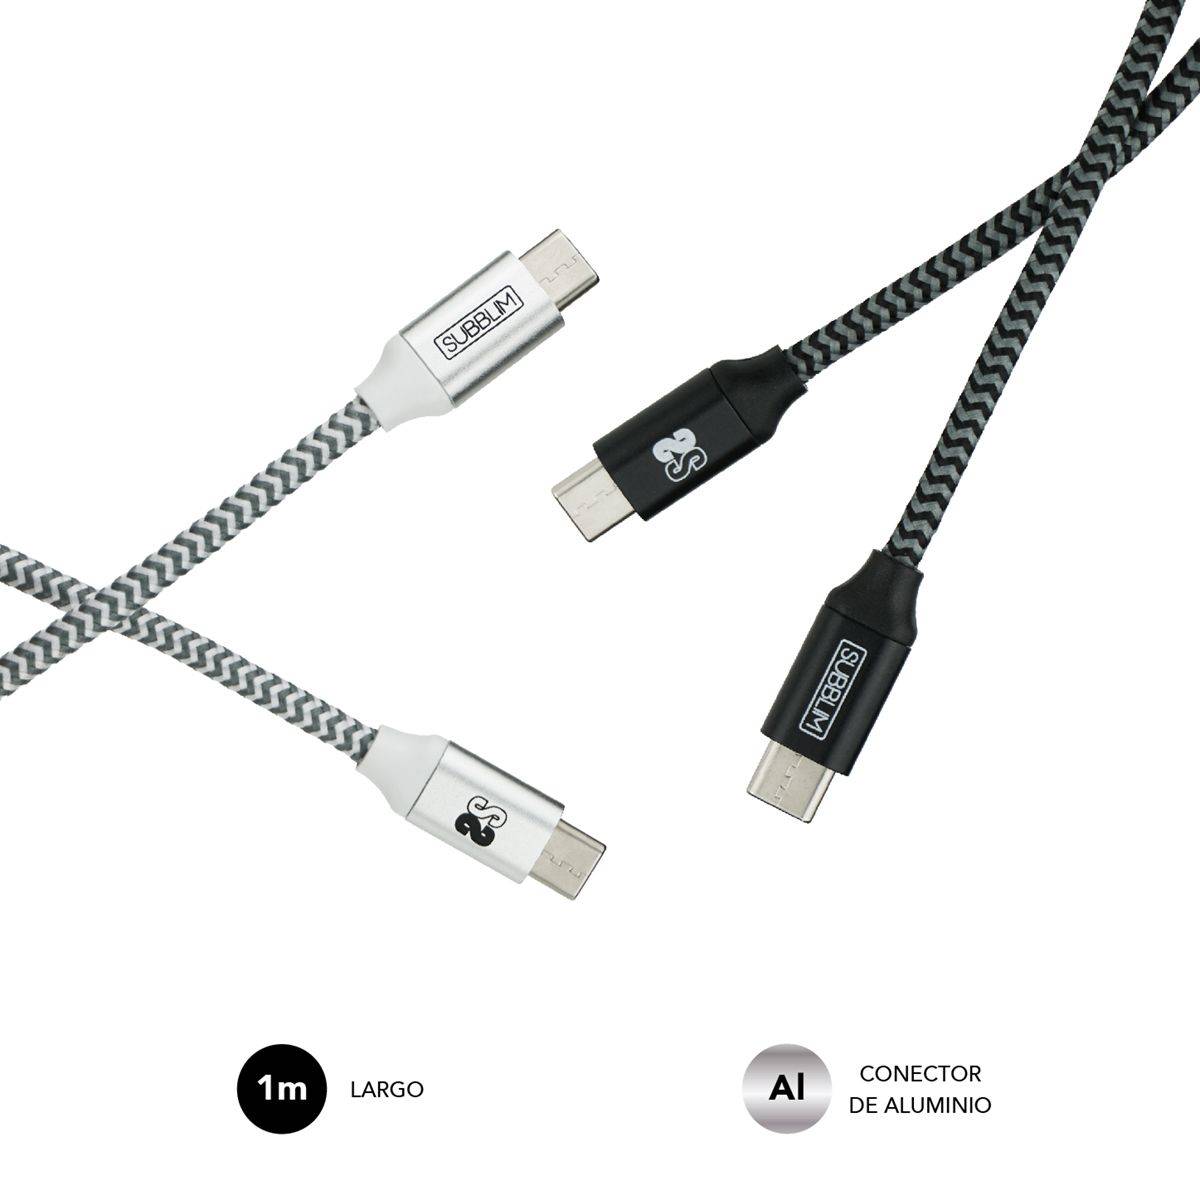 Pack Subblim de Câbles USB C vers USB C - 1m - Charge Rapide jusqu'à 5V/30A - Synchronisation des Données jusqu'à 5Gbps - Fibre Nylon Résistante - Double Tressé pour une Meilleure Protection - Connecteurs Réversibles en Aluminium - Couleur Noir